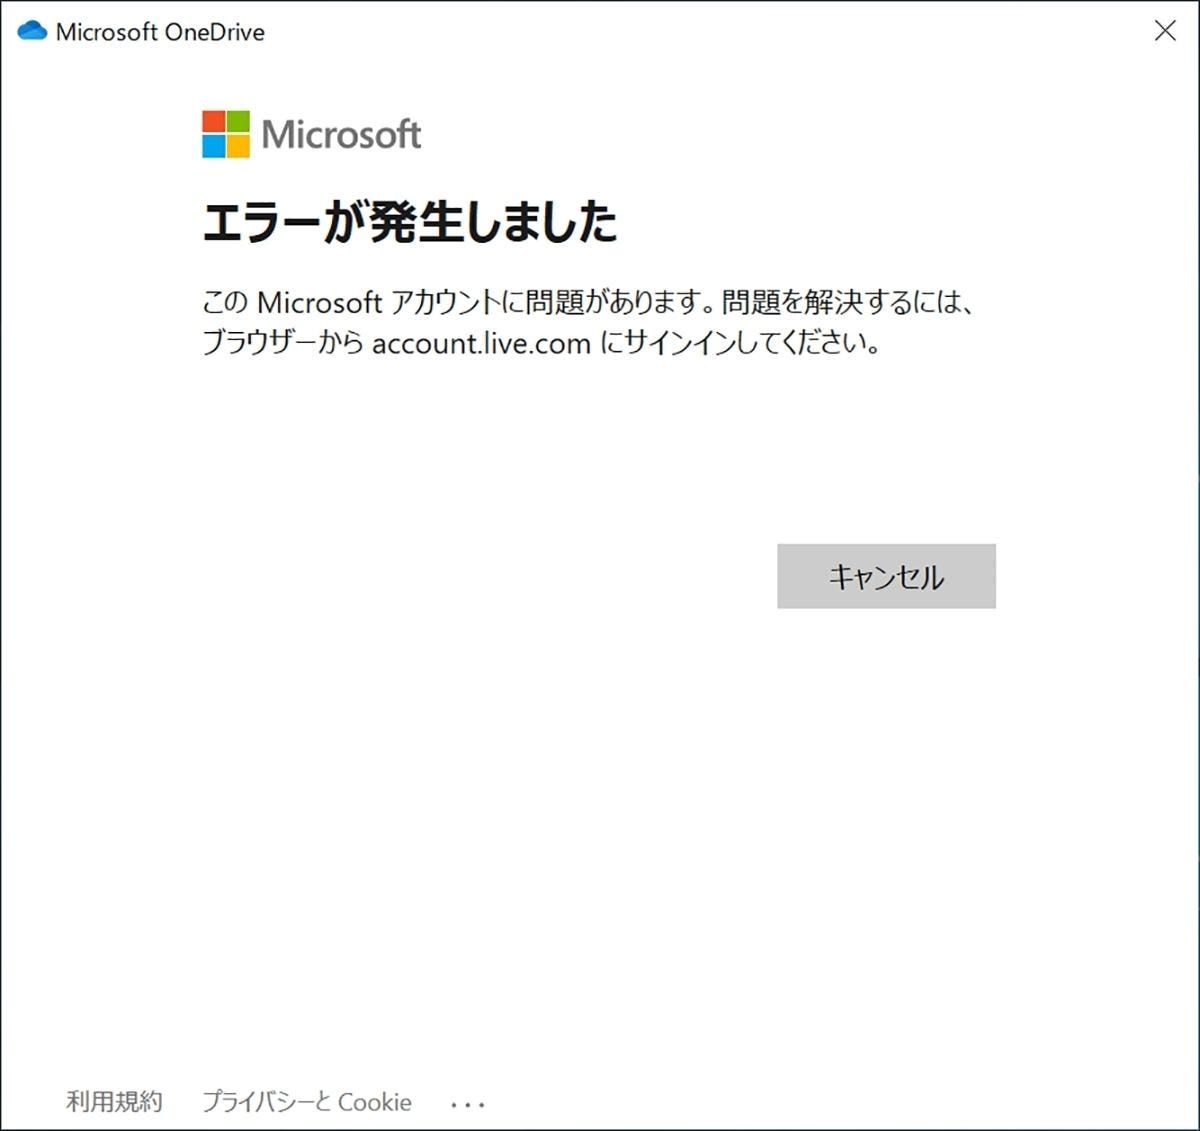 Windows 10ミニtips 562 Msアカウントに電話番号を勝手に関連付けられたら マイナビニュース